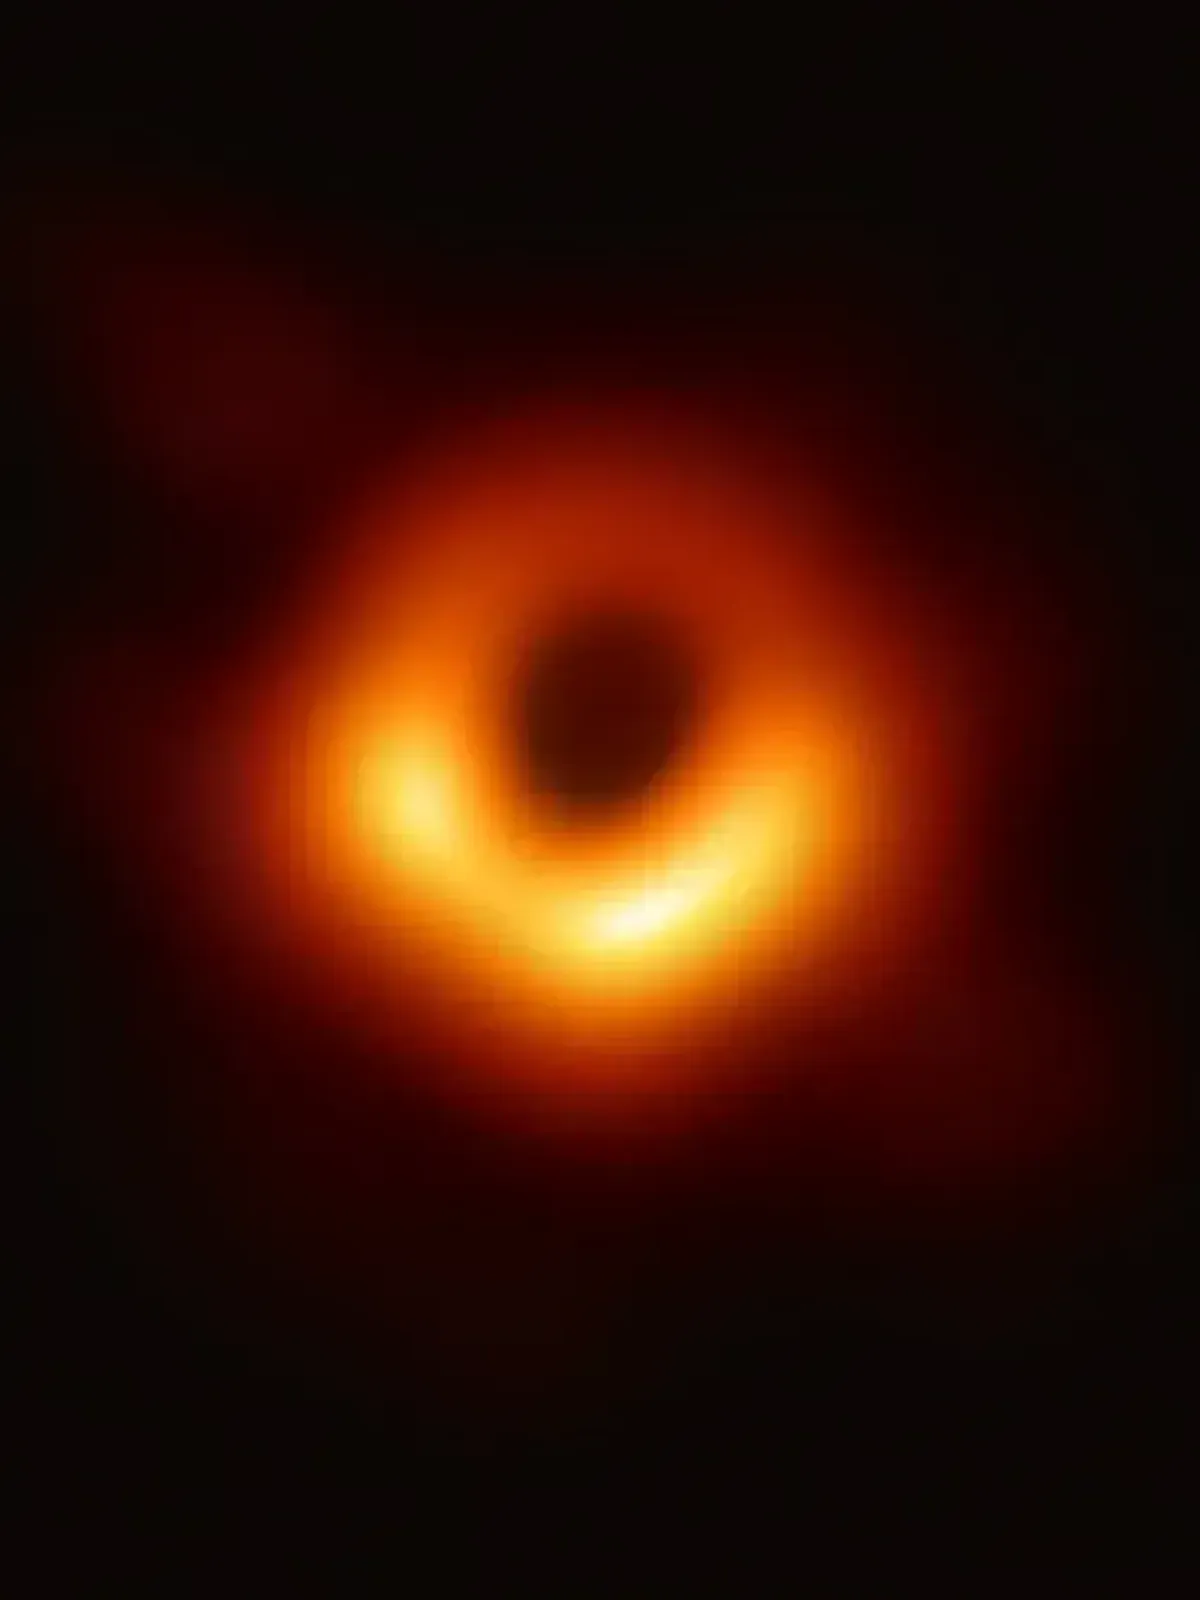 Schon mal vorgestellt, in ein Schwarzer Loch zu fallen? Die NASA hat dafür eine Visualisierung eines Sturzes in ein Schwarzes Loch erstellt.